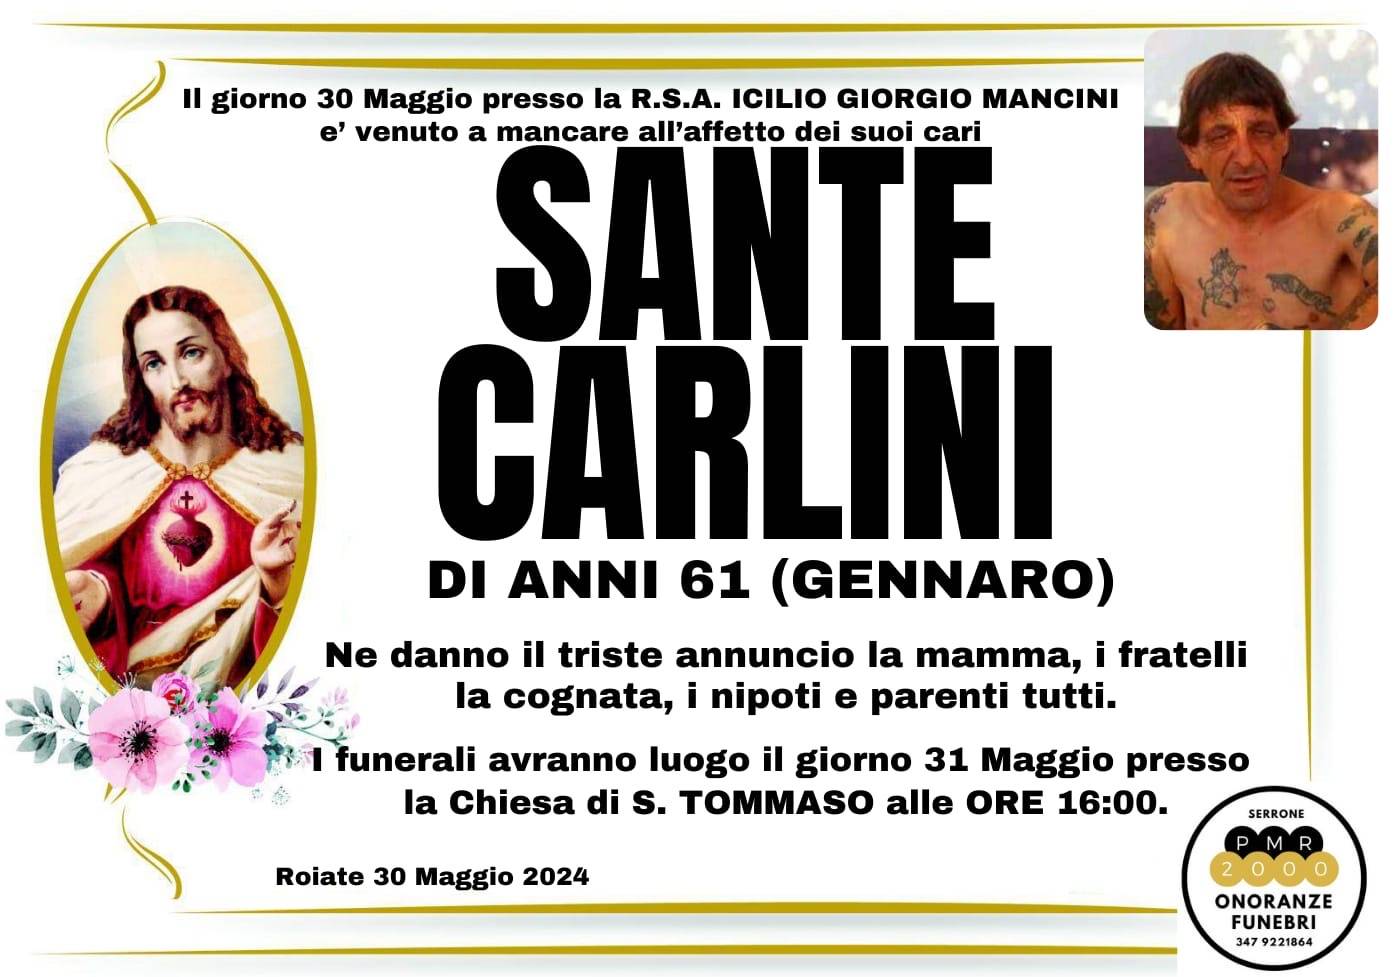 Sante Carlini